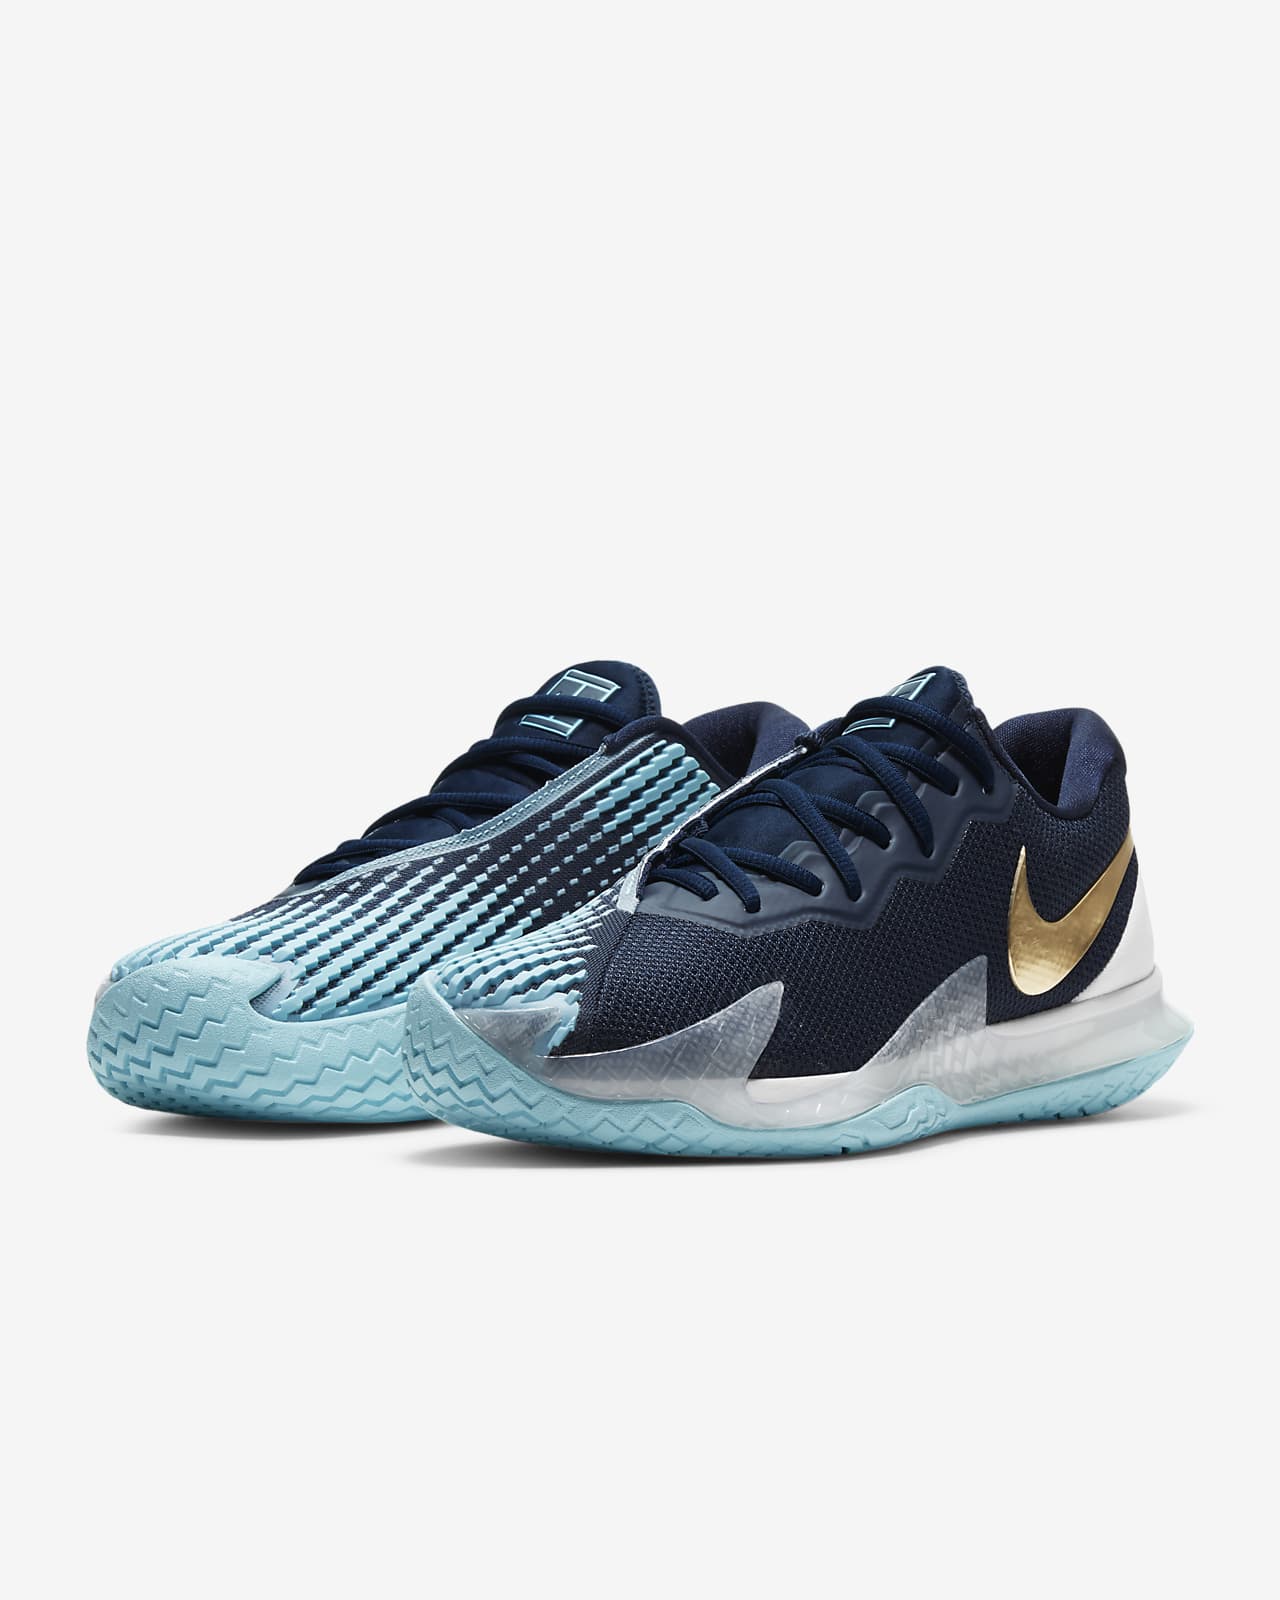 NikeCourt Air Zoom Vapor Cage 4 Men’s Hard Court Tennis Shoes